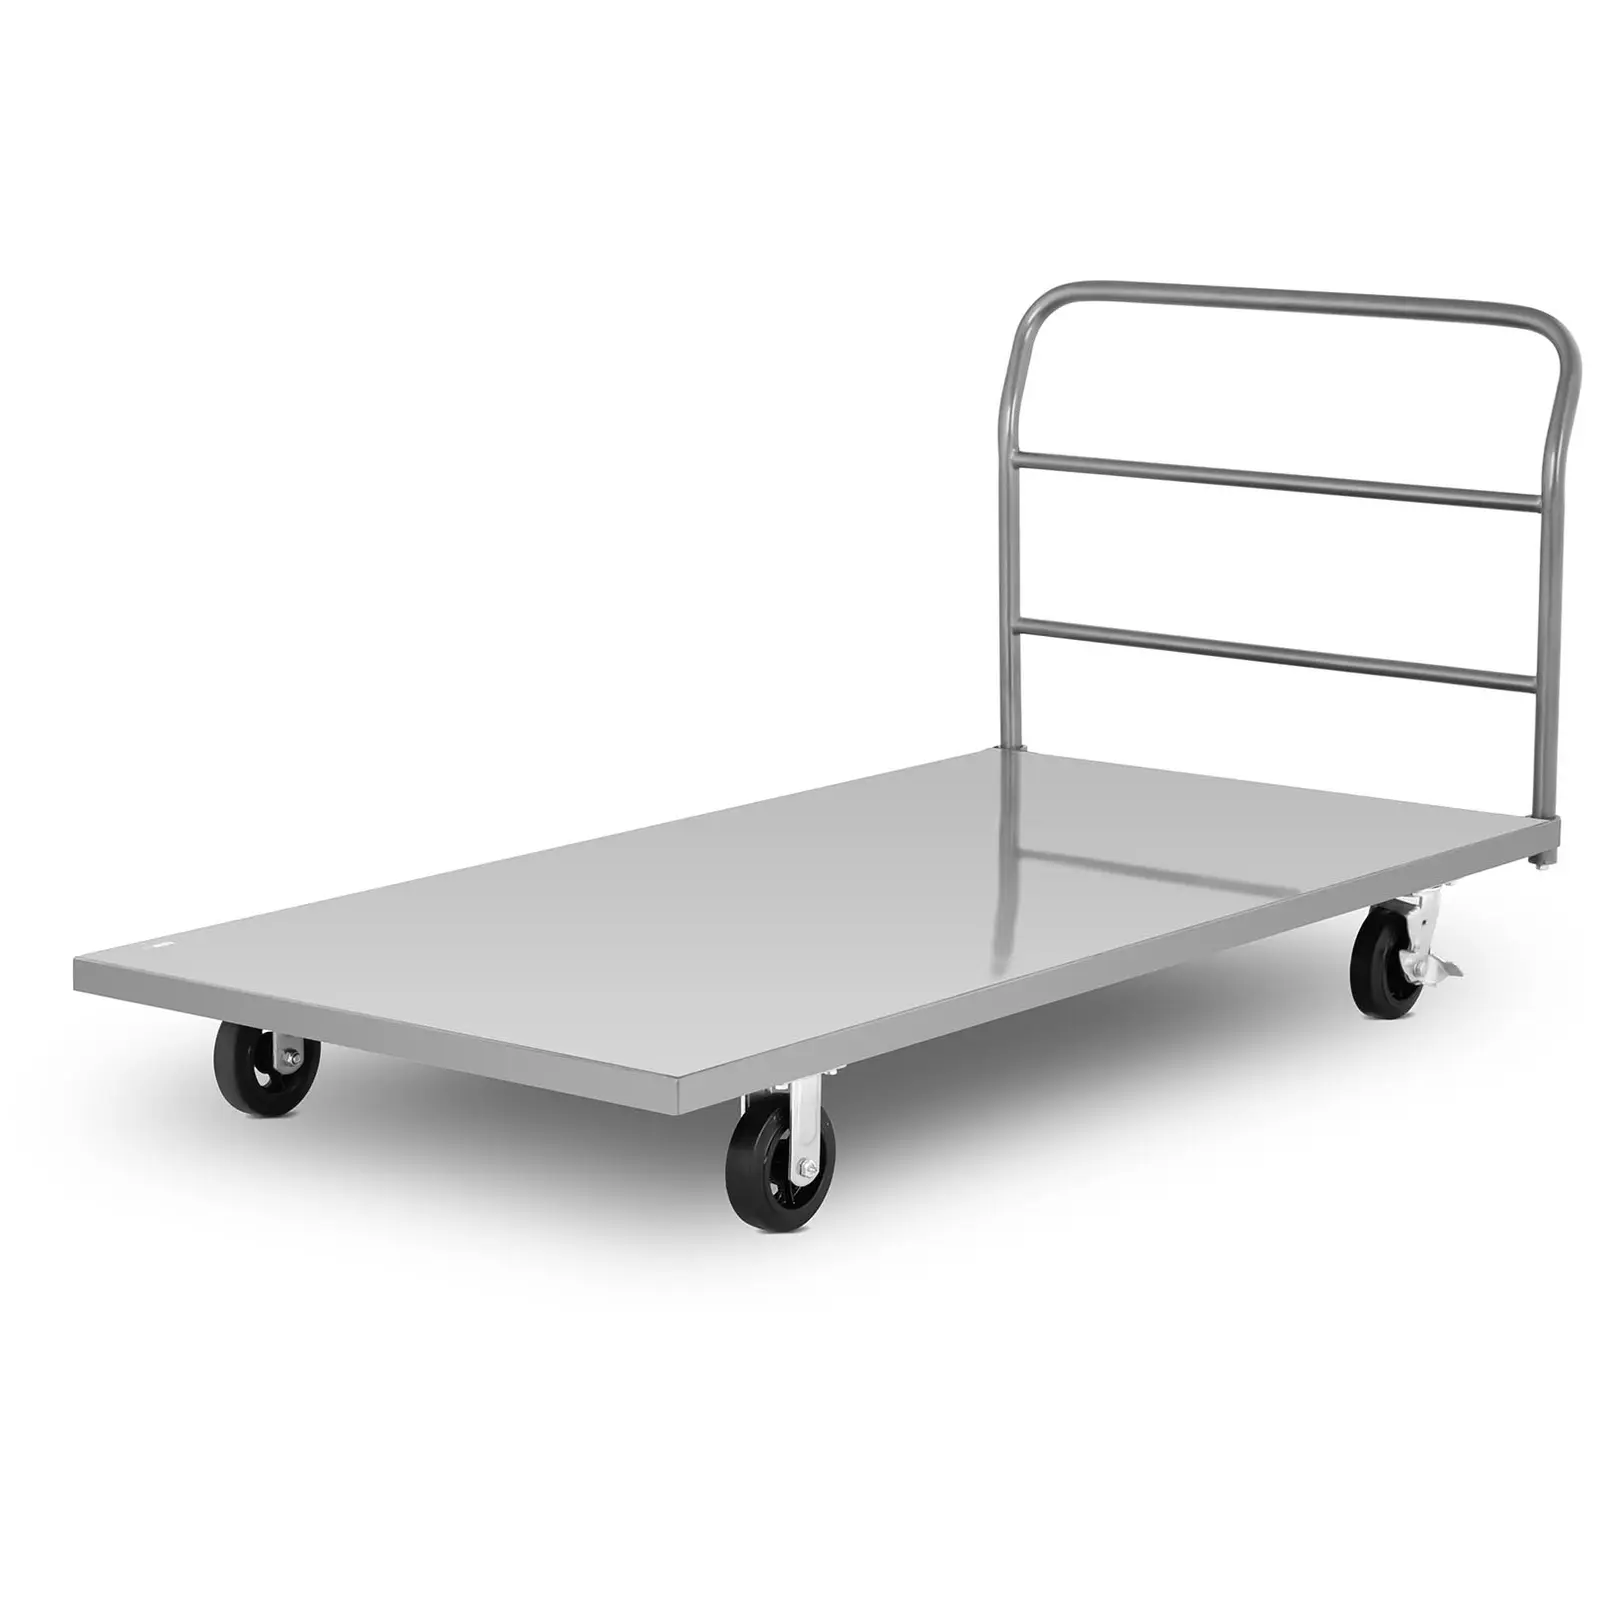 Platformos vežimėlis - iki 500 kg